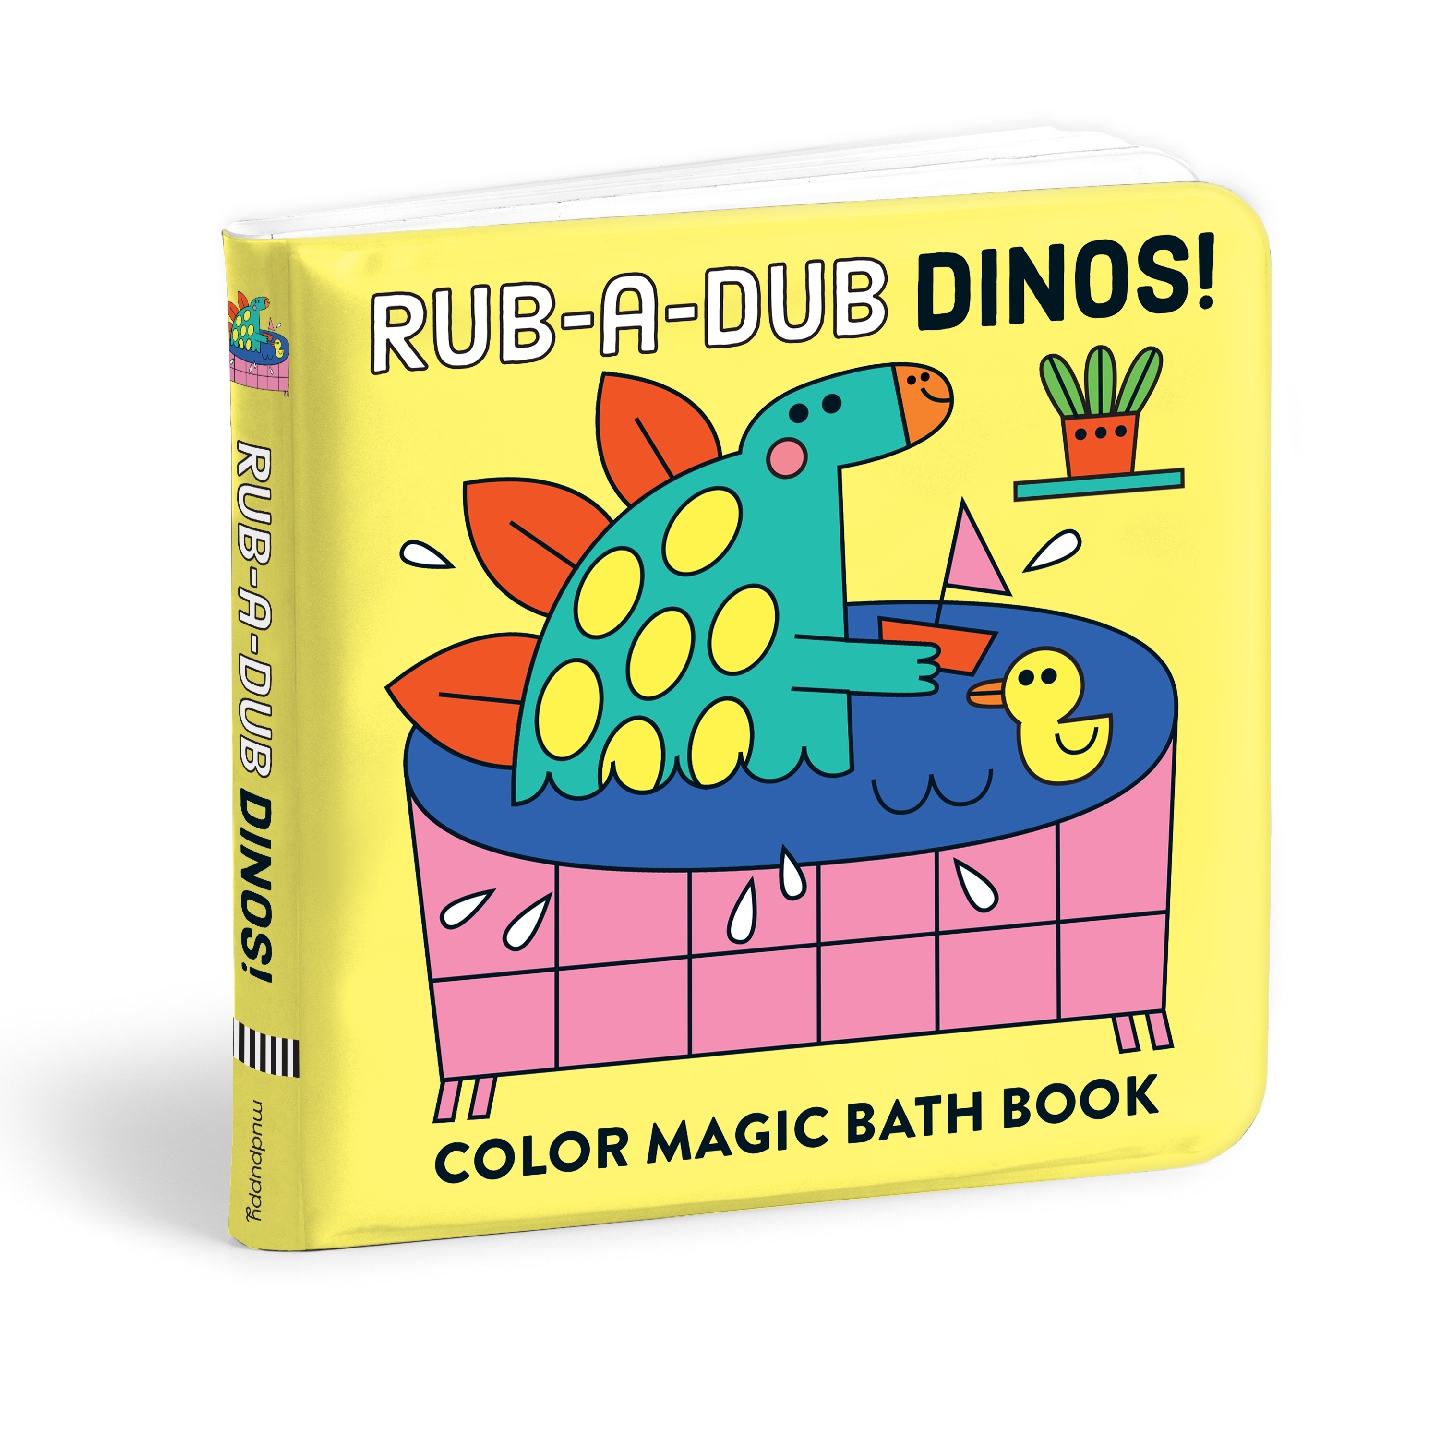 Rub-a-Dub Dinos! Color Magic Bath Book